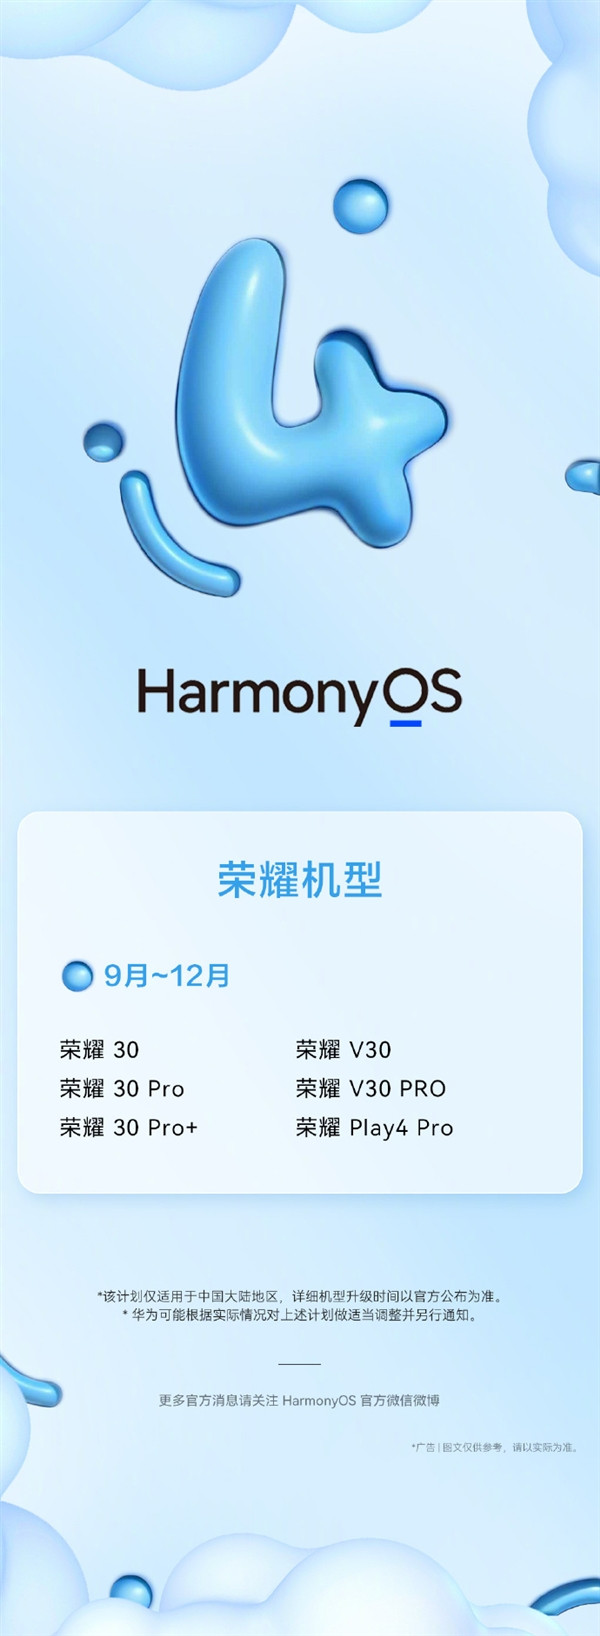 荣耀 30/V30 等老机型支持升级鸿蒙 OS 4 ，9月-12月陆续开启